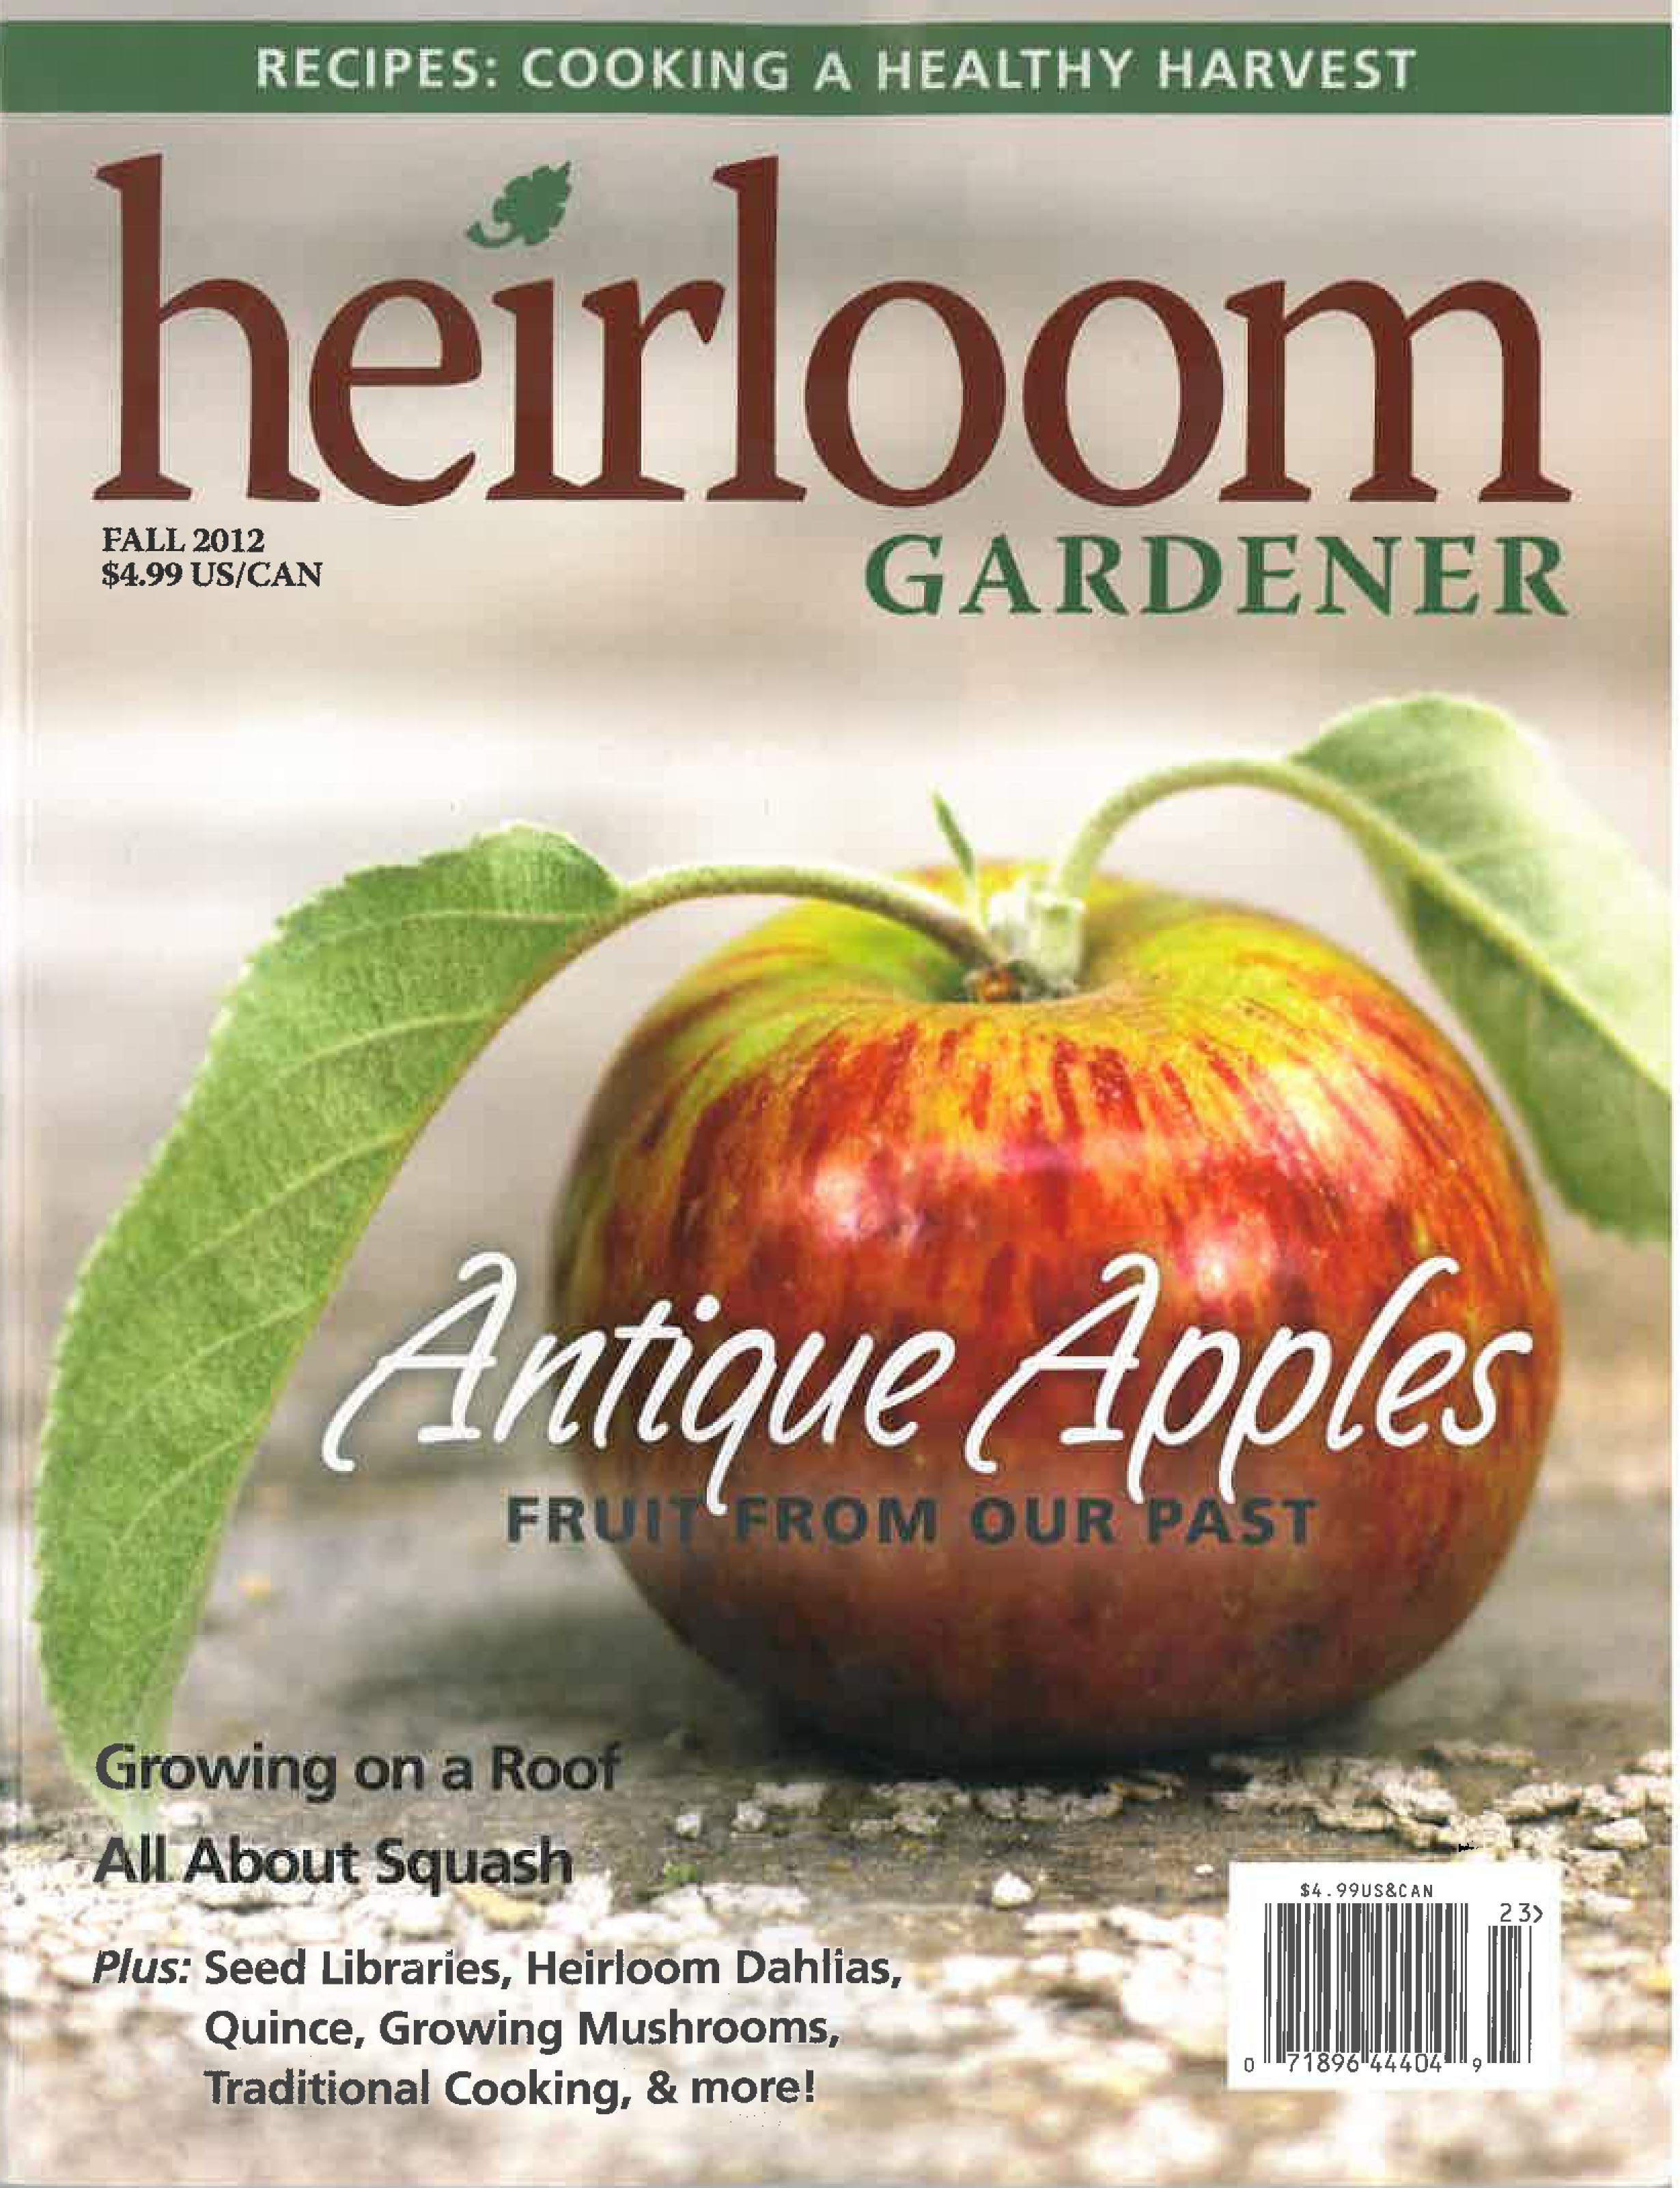 Heirloom Gardener The Girl The Fig